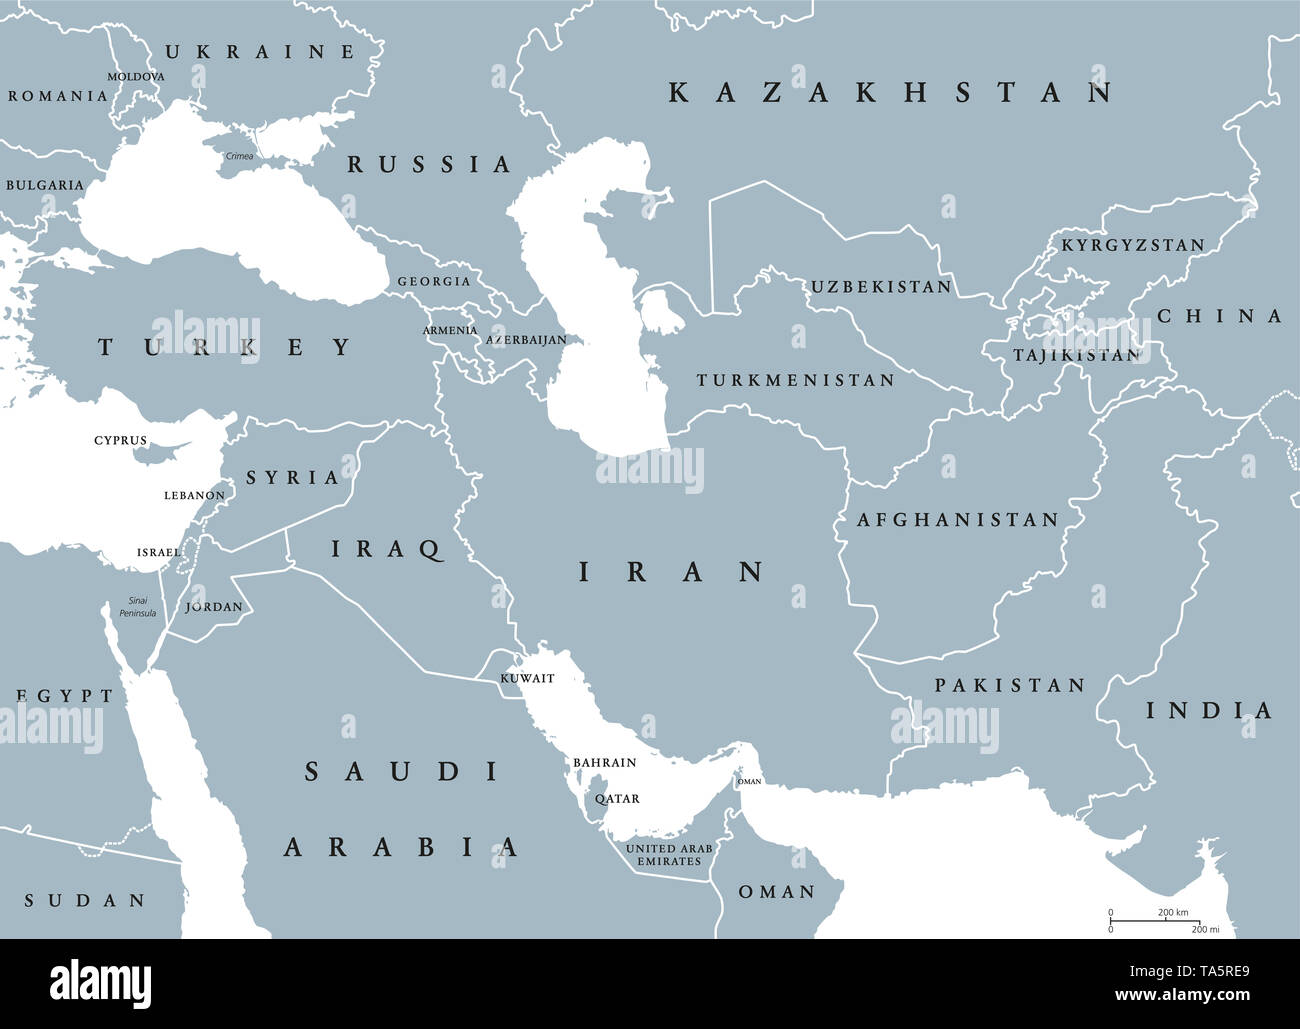 L'Asie du Sud-Ouest, une carte politique avec les frontières. Également appelé, à l'ouest de l'Ouest ou le sud-ouest de l'Asie. Sous-région, chevauchement avec le Moyen-Orient. Banque D'Images